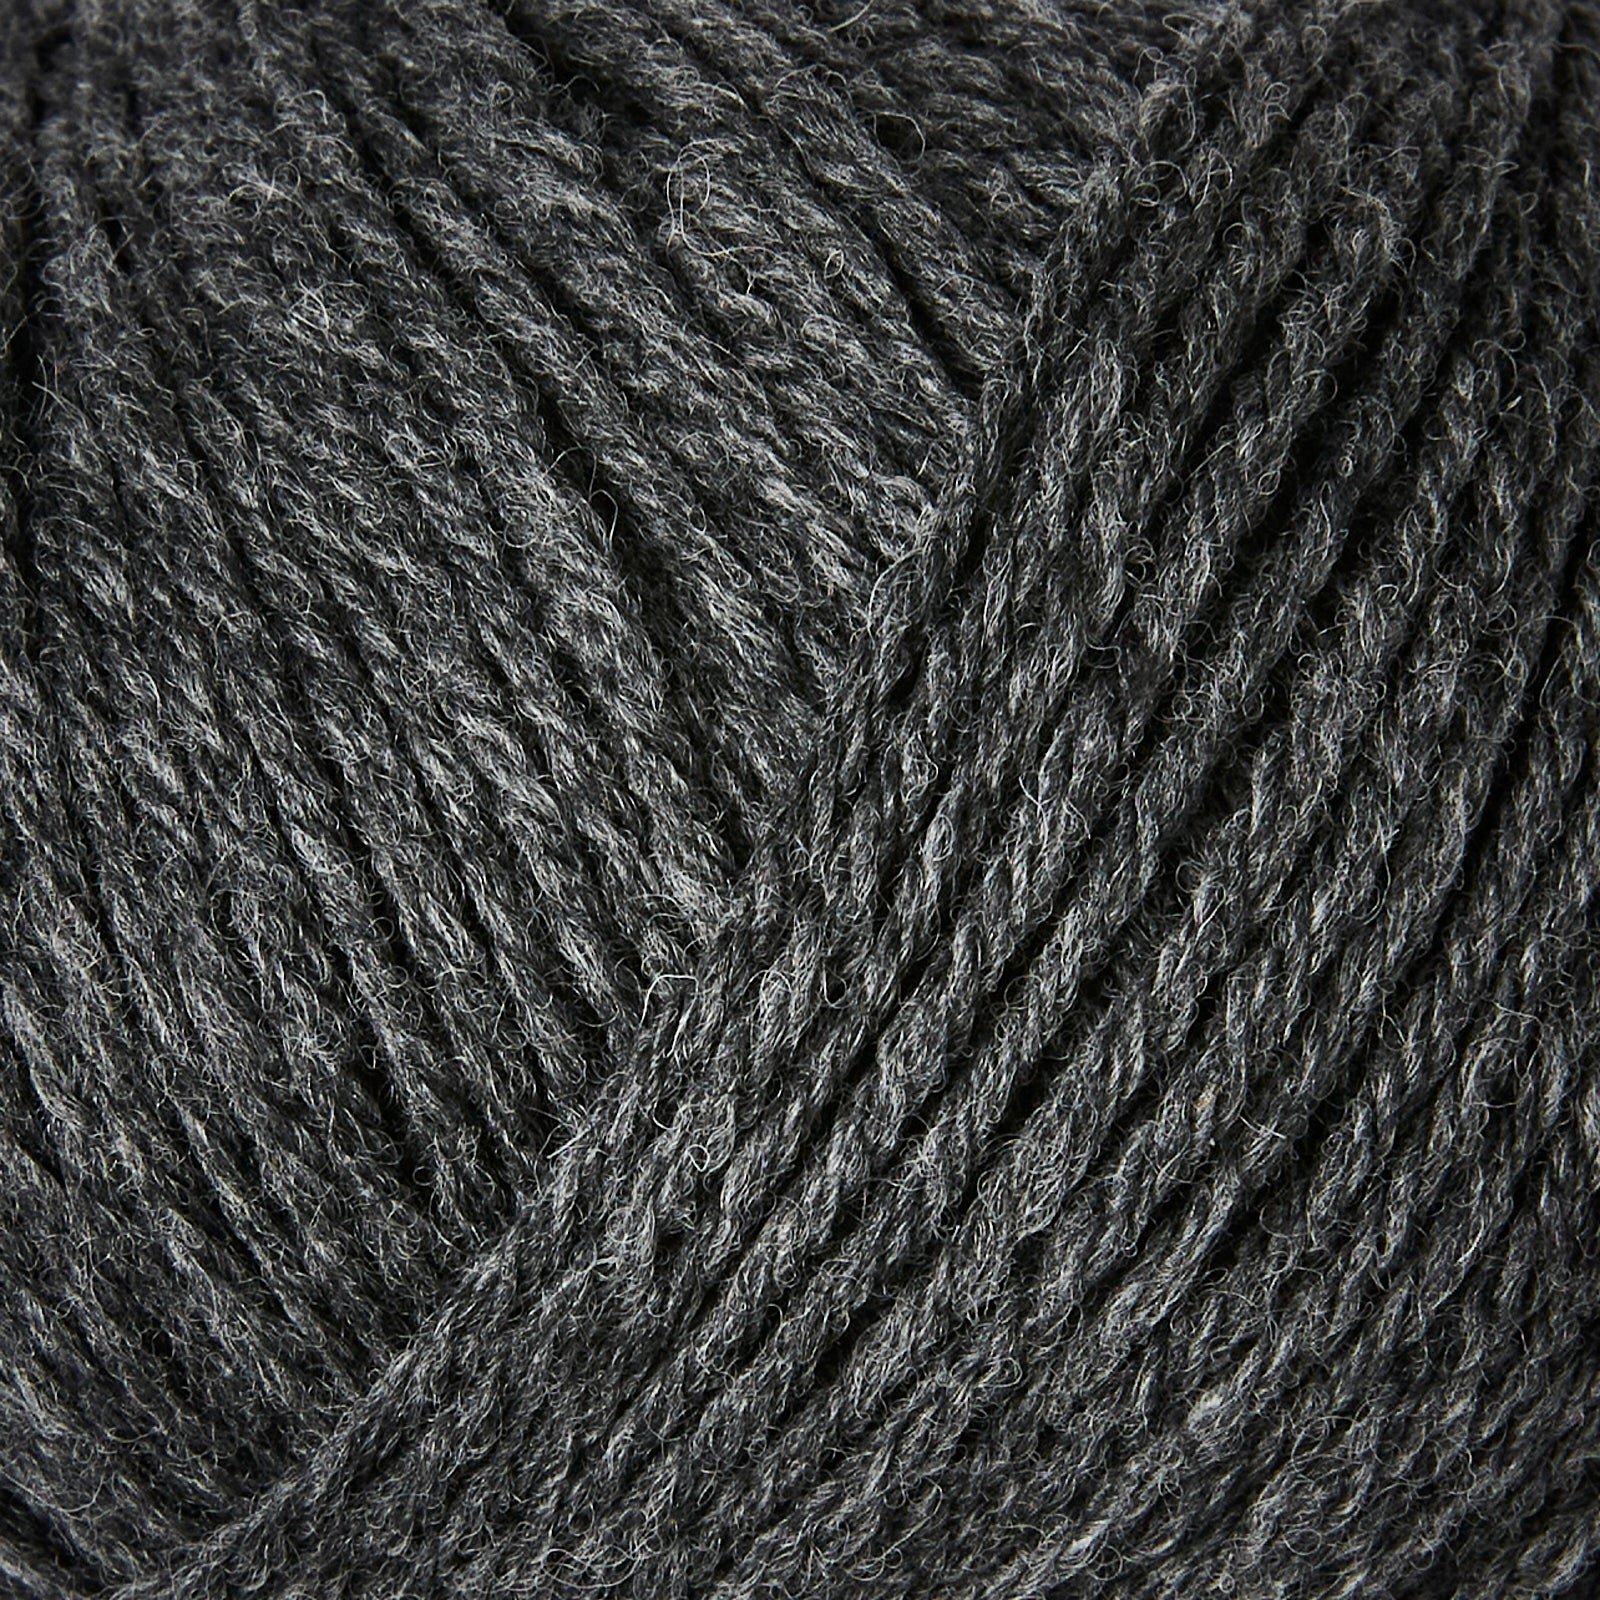 Knitting for Olive HEAVY Merino - Slate Gray